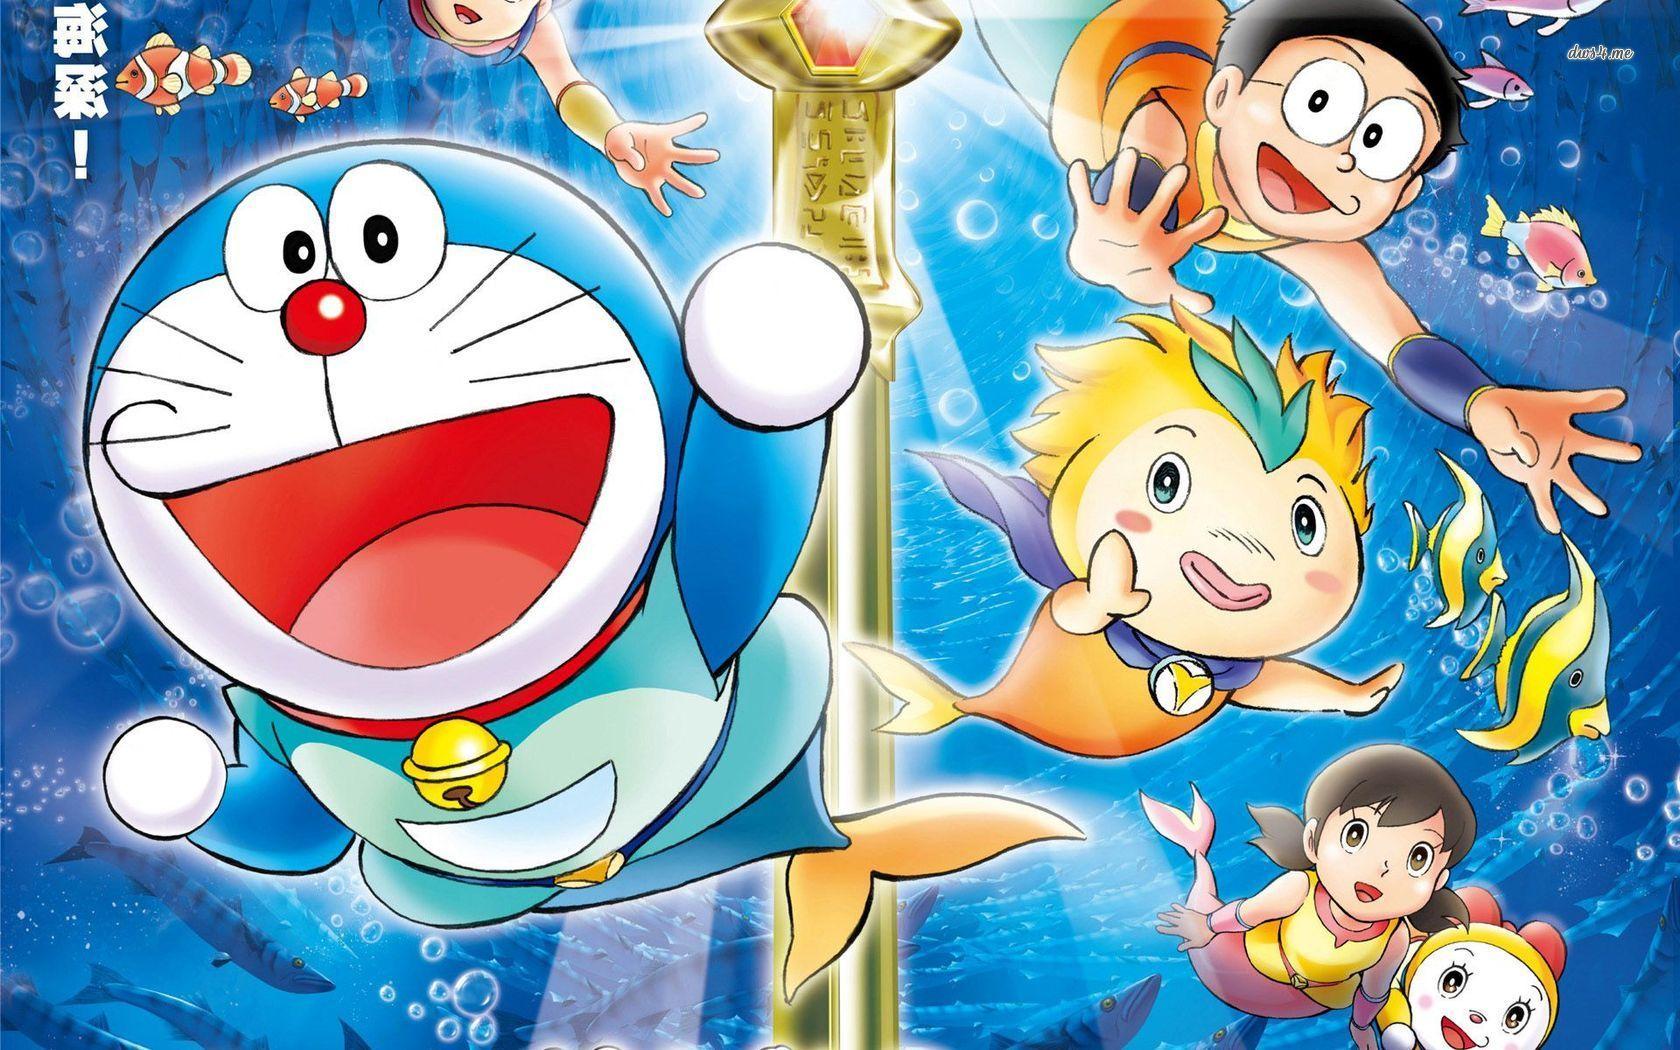 Doraemon and Nobita Wallpapers - Top Những Hình Ảnh Đẹp